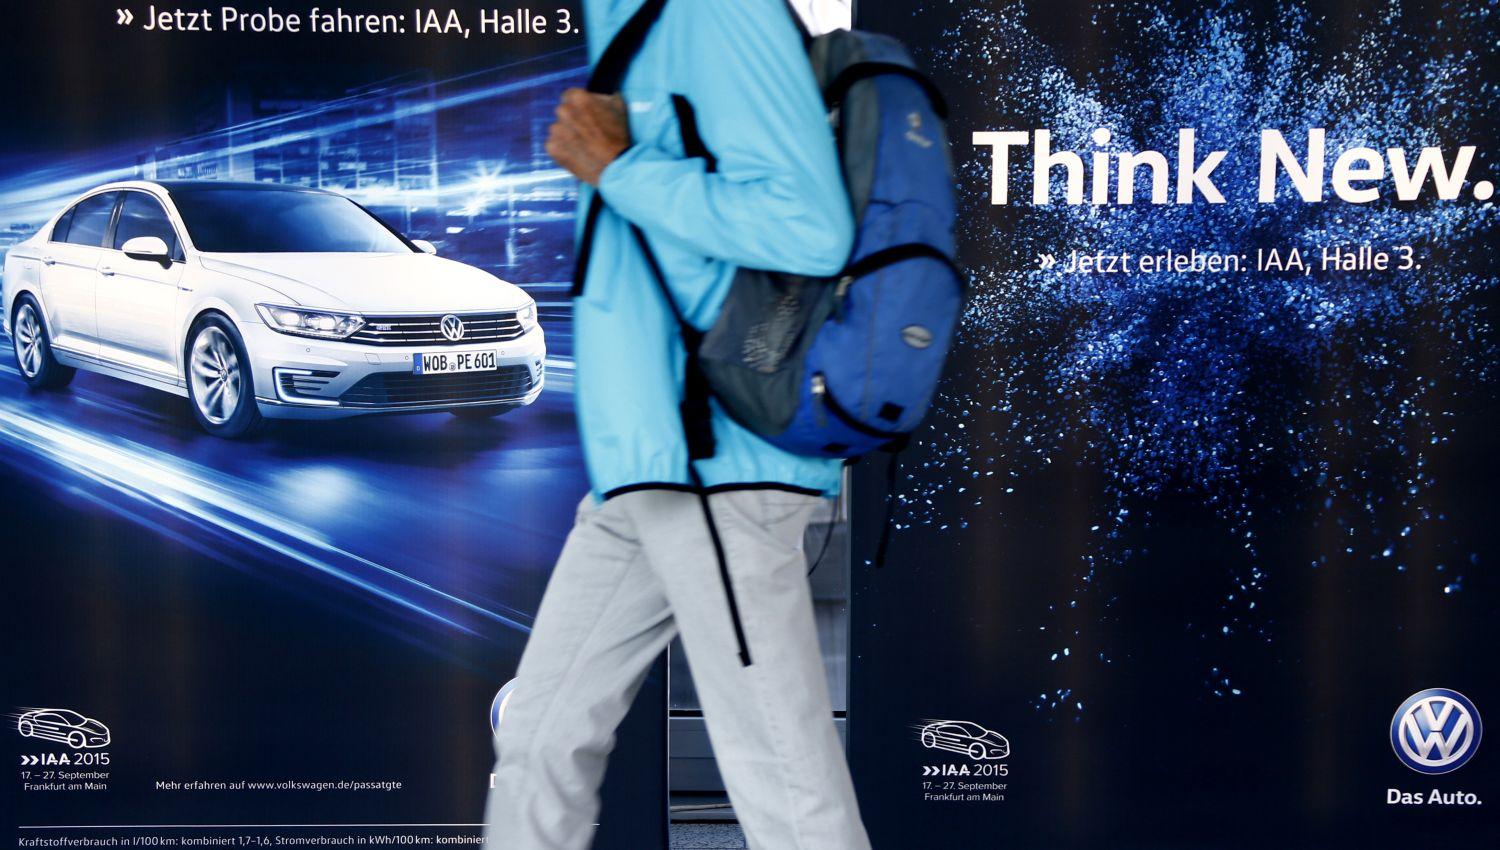 Új gondolatokra buzdít a VW reklámplakátja, és valóban, nem hétköznapi ötlettel csapták be a vevőiket